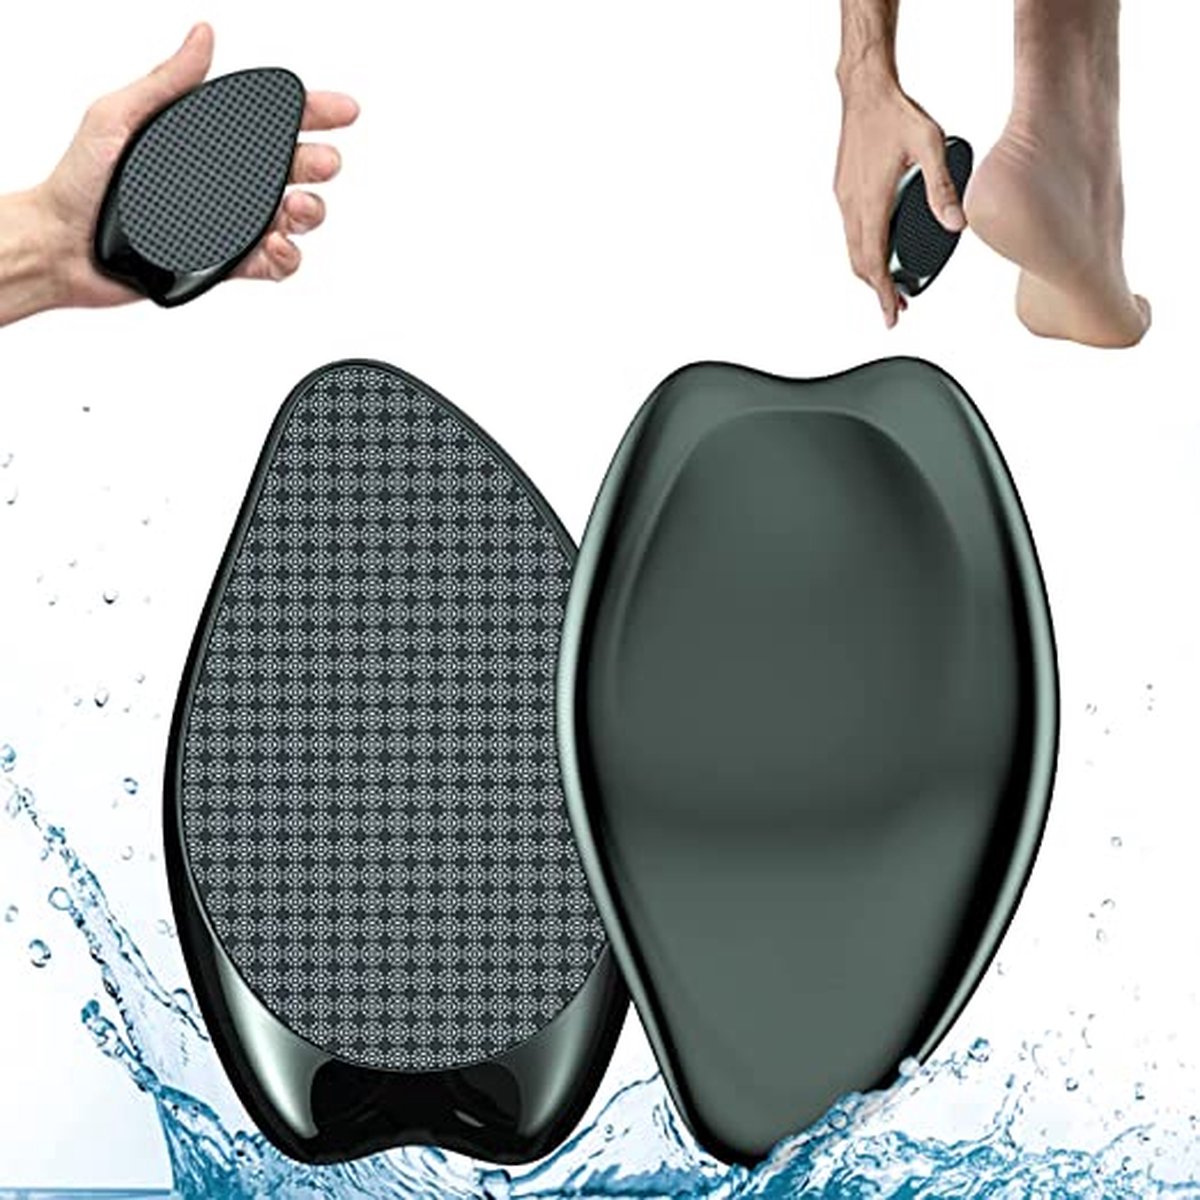 Premium Nano Glas Eeltverwijderaar nat en droog - zeer effectieve eeltvijl voor fluweelzachte voeten - Voetvijl - Voetverzorging - Eeeltverwijderaar – Pedicure - Eeltrasp – Eeltschraper- professionele voetverzorging veilig en snel.